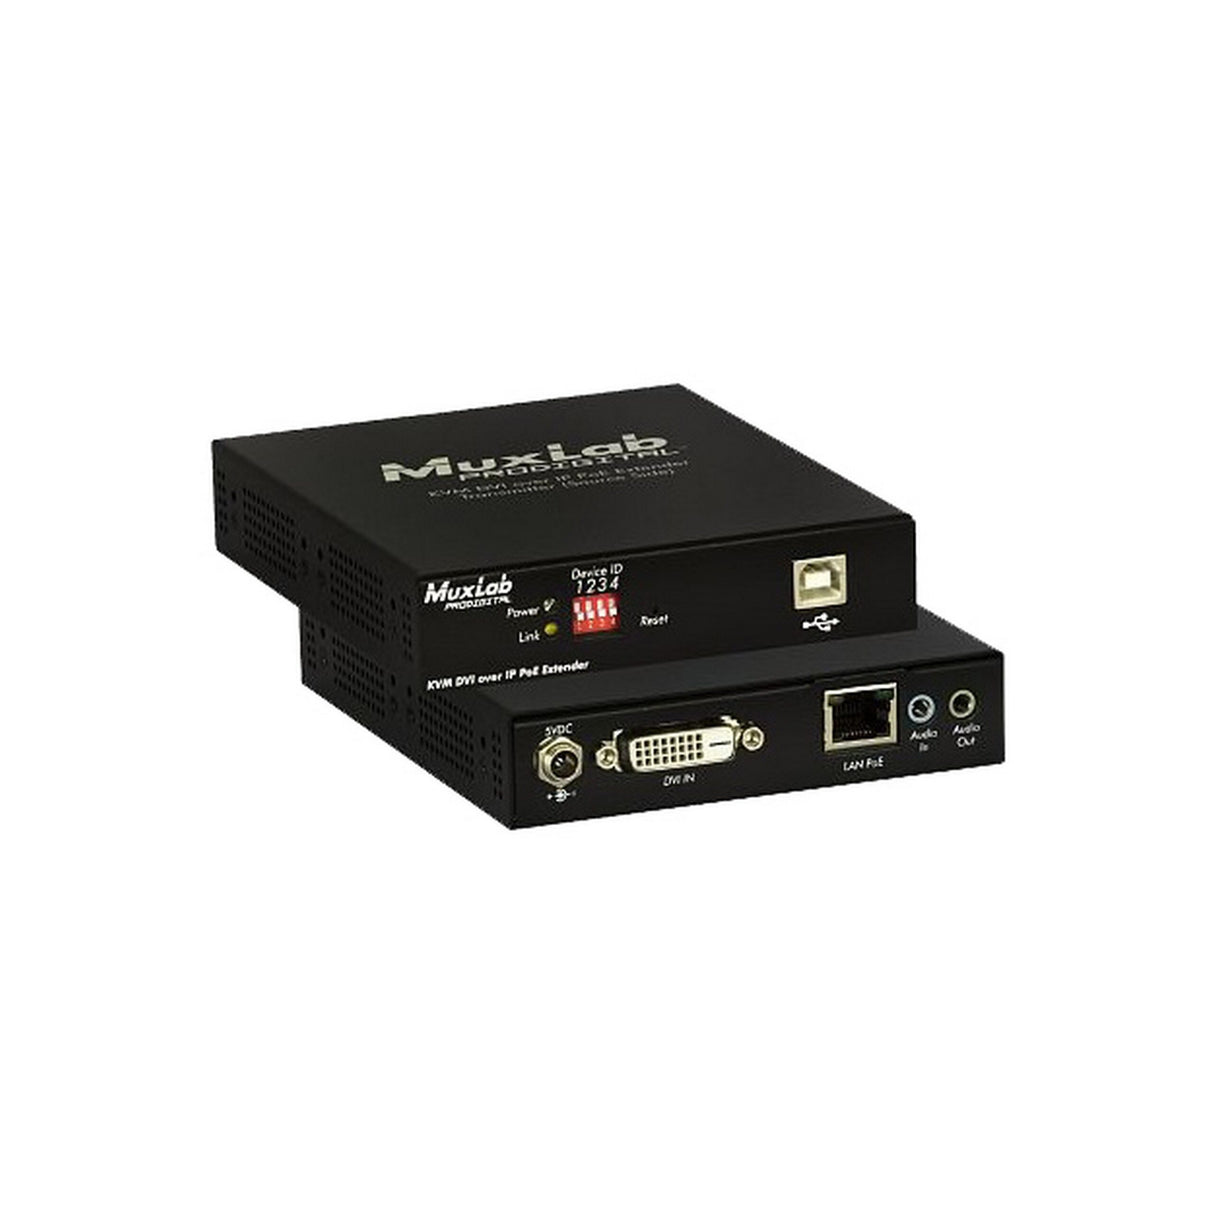 MuxLab 500771-TX DVI/USB 2.0 KVM over IP PoE Extender Transmitter